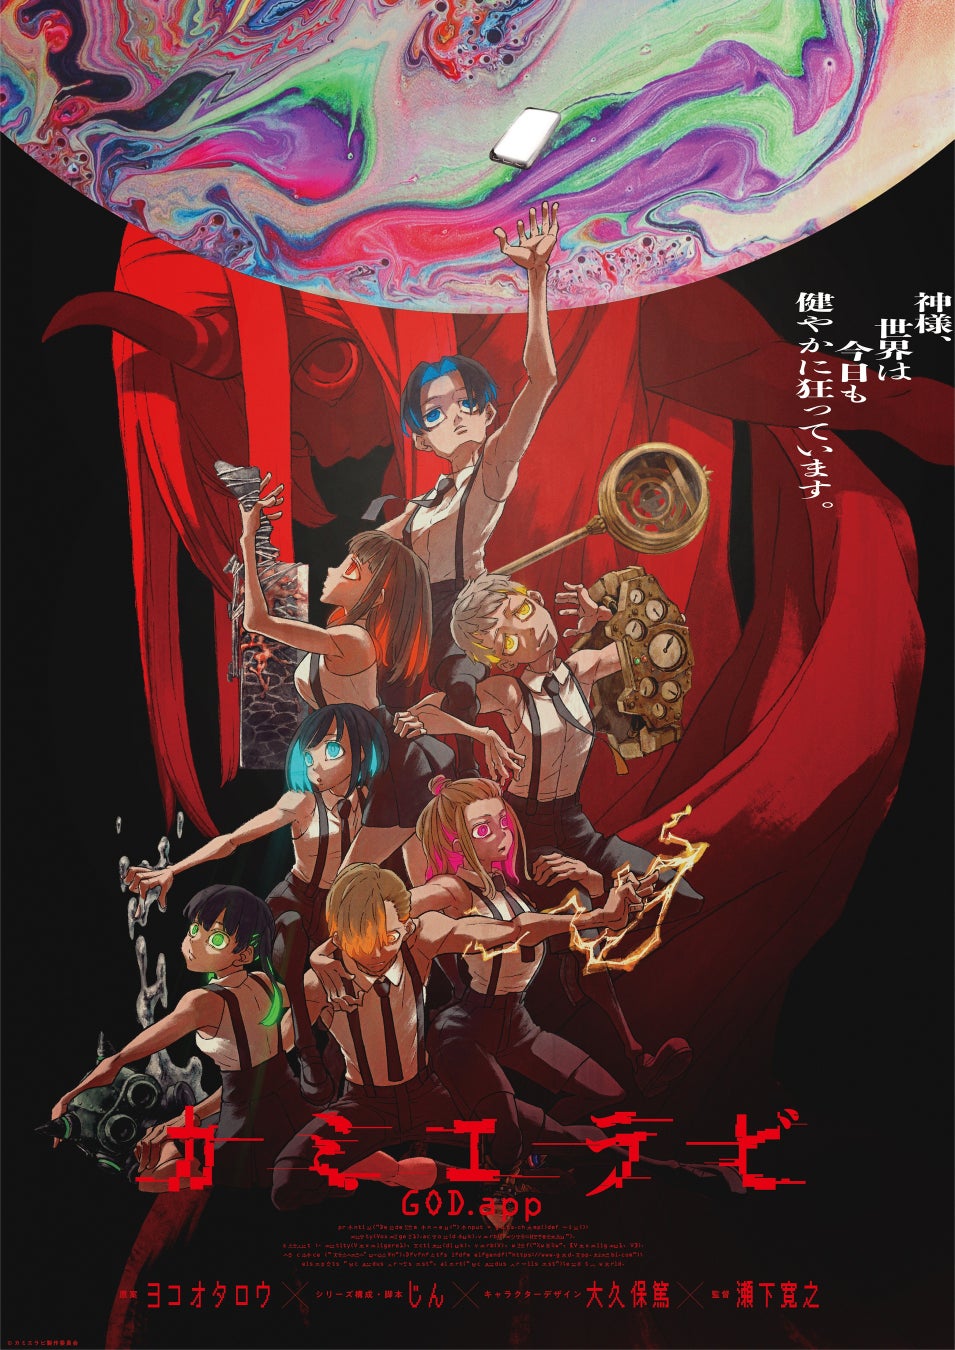 オリジナルTVアニメ「カミエラビ GOD.app」Blu-ray 発売決定！